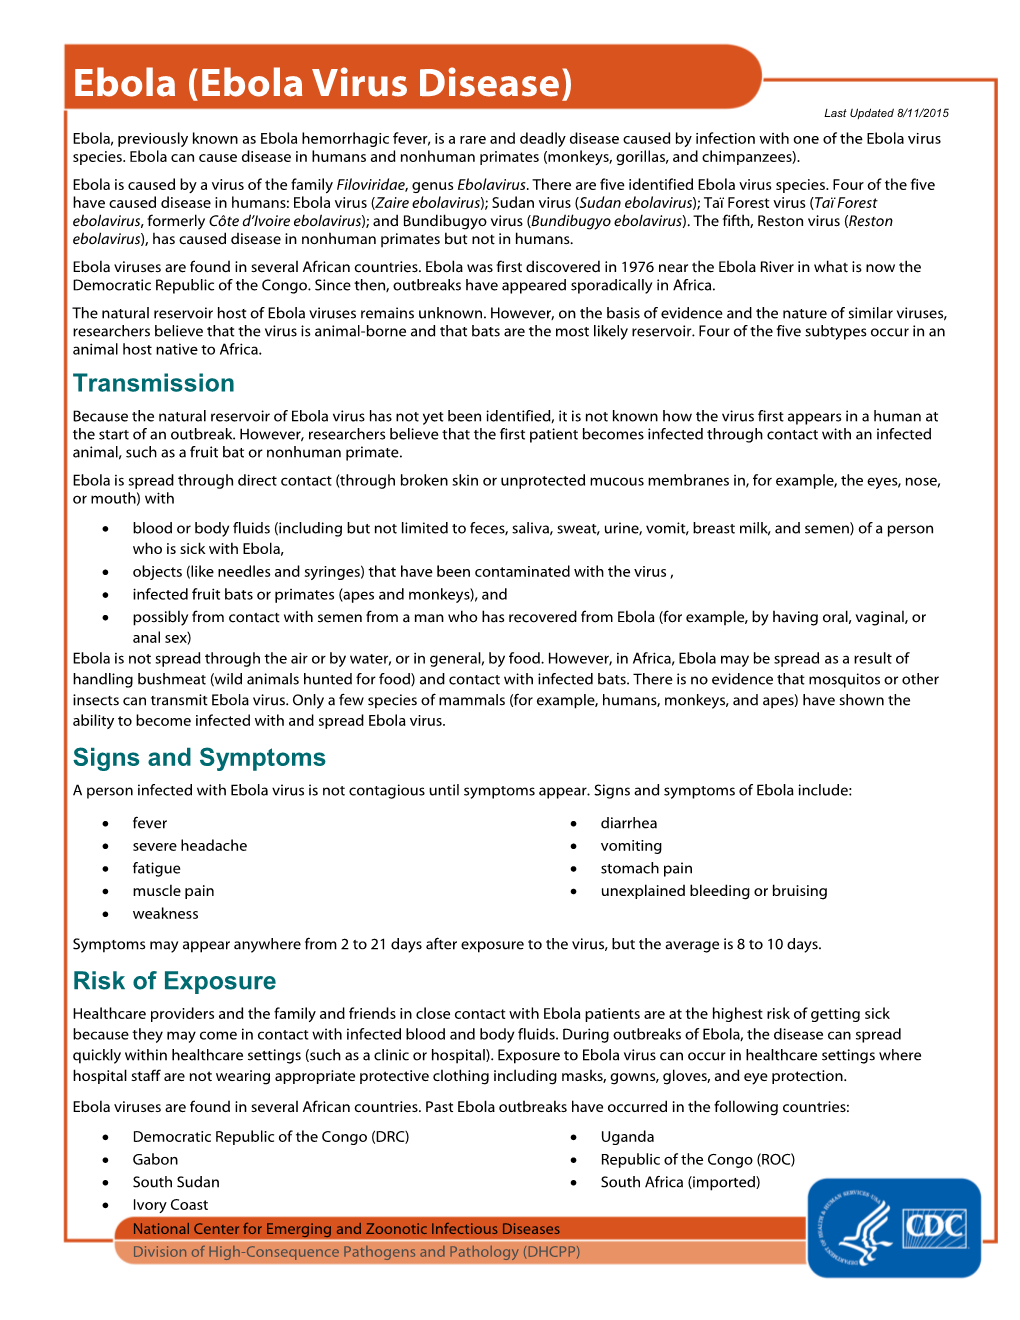 Ebola Fact Sheet